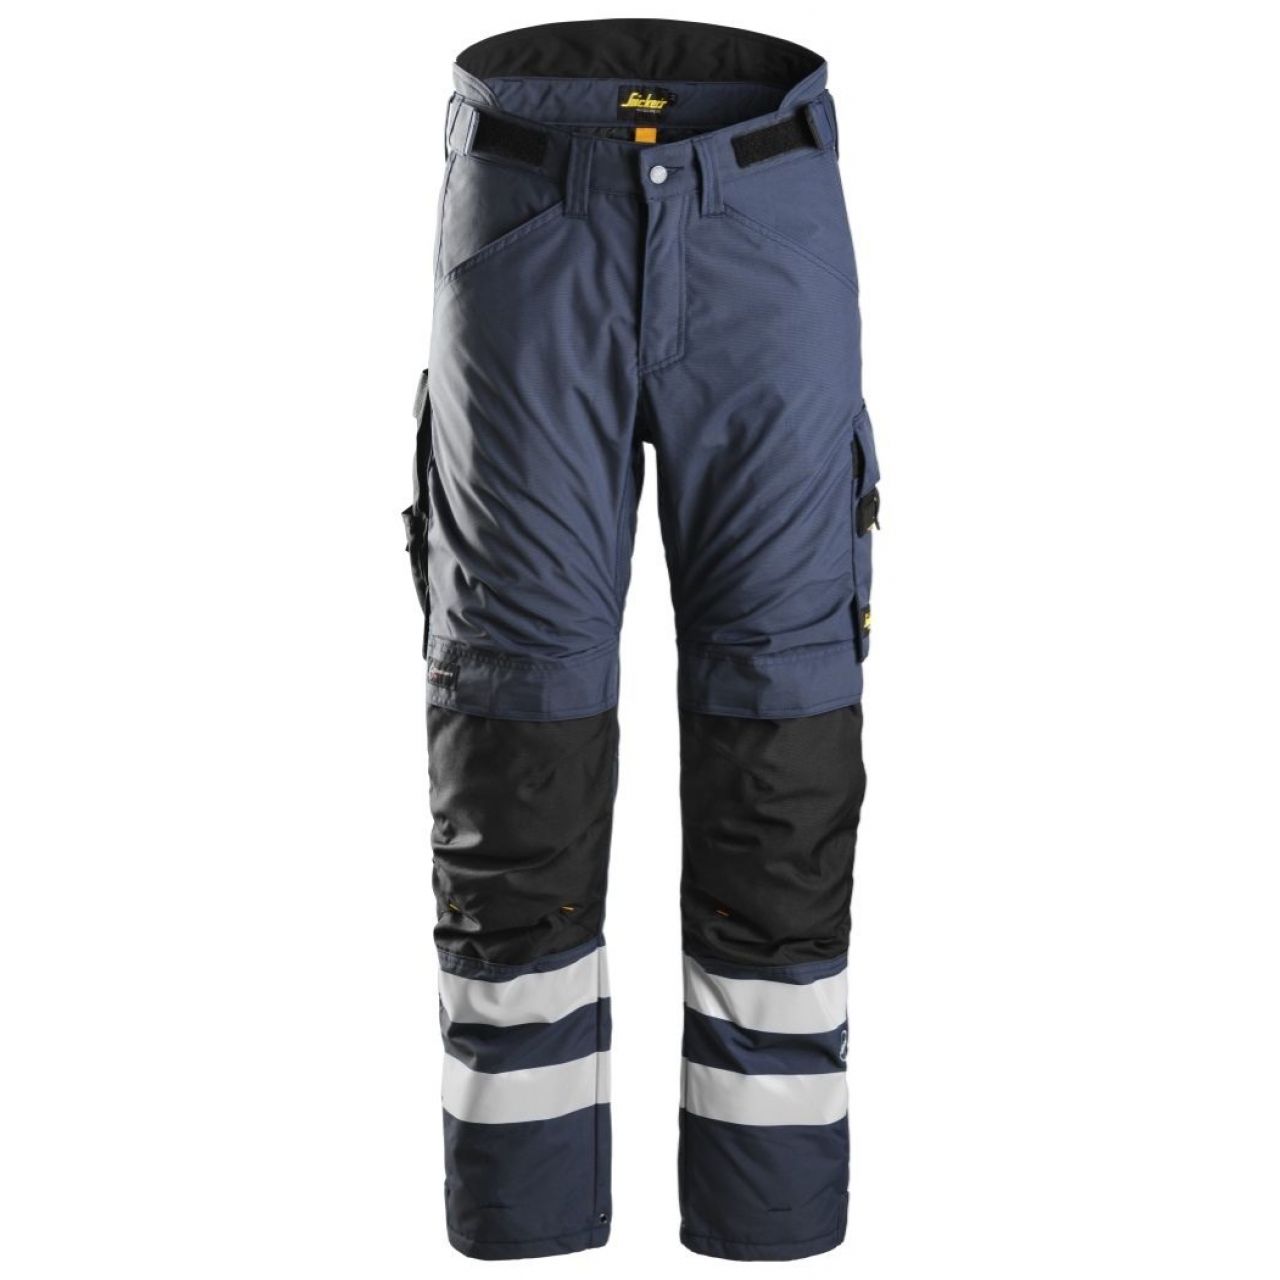 Pantalon aislante AllroundWork 37.5® azul marino-negro talla S corto